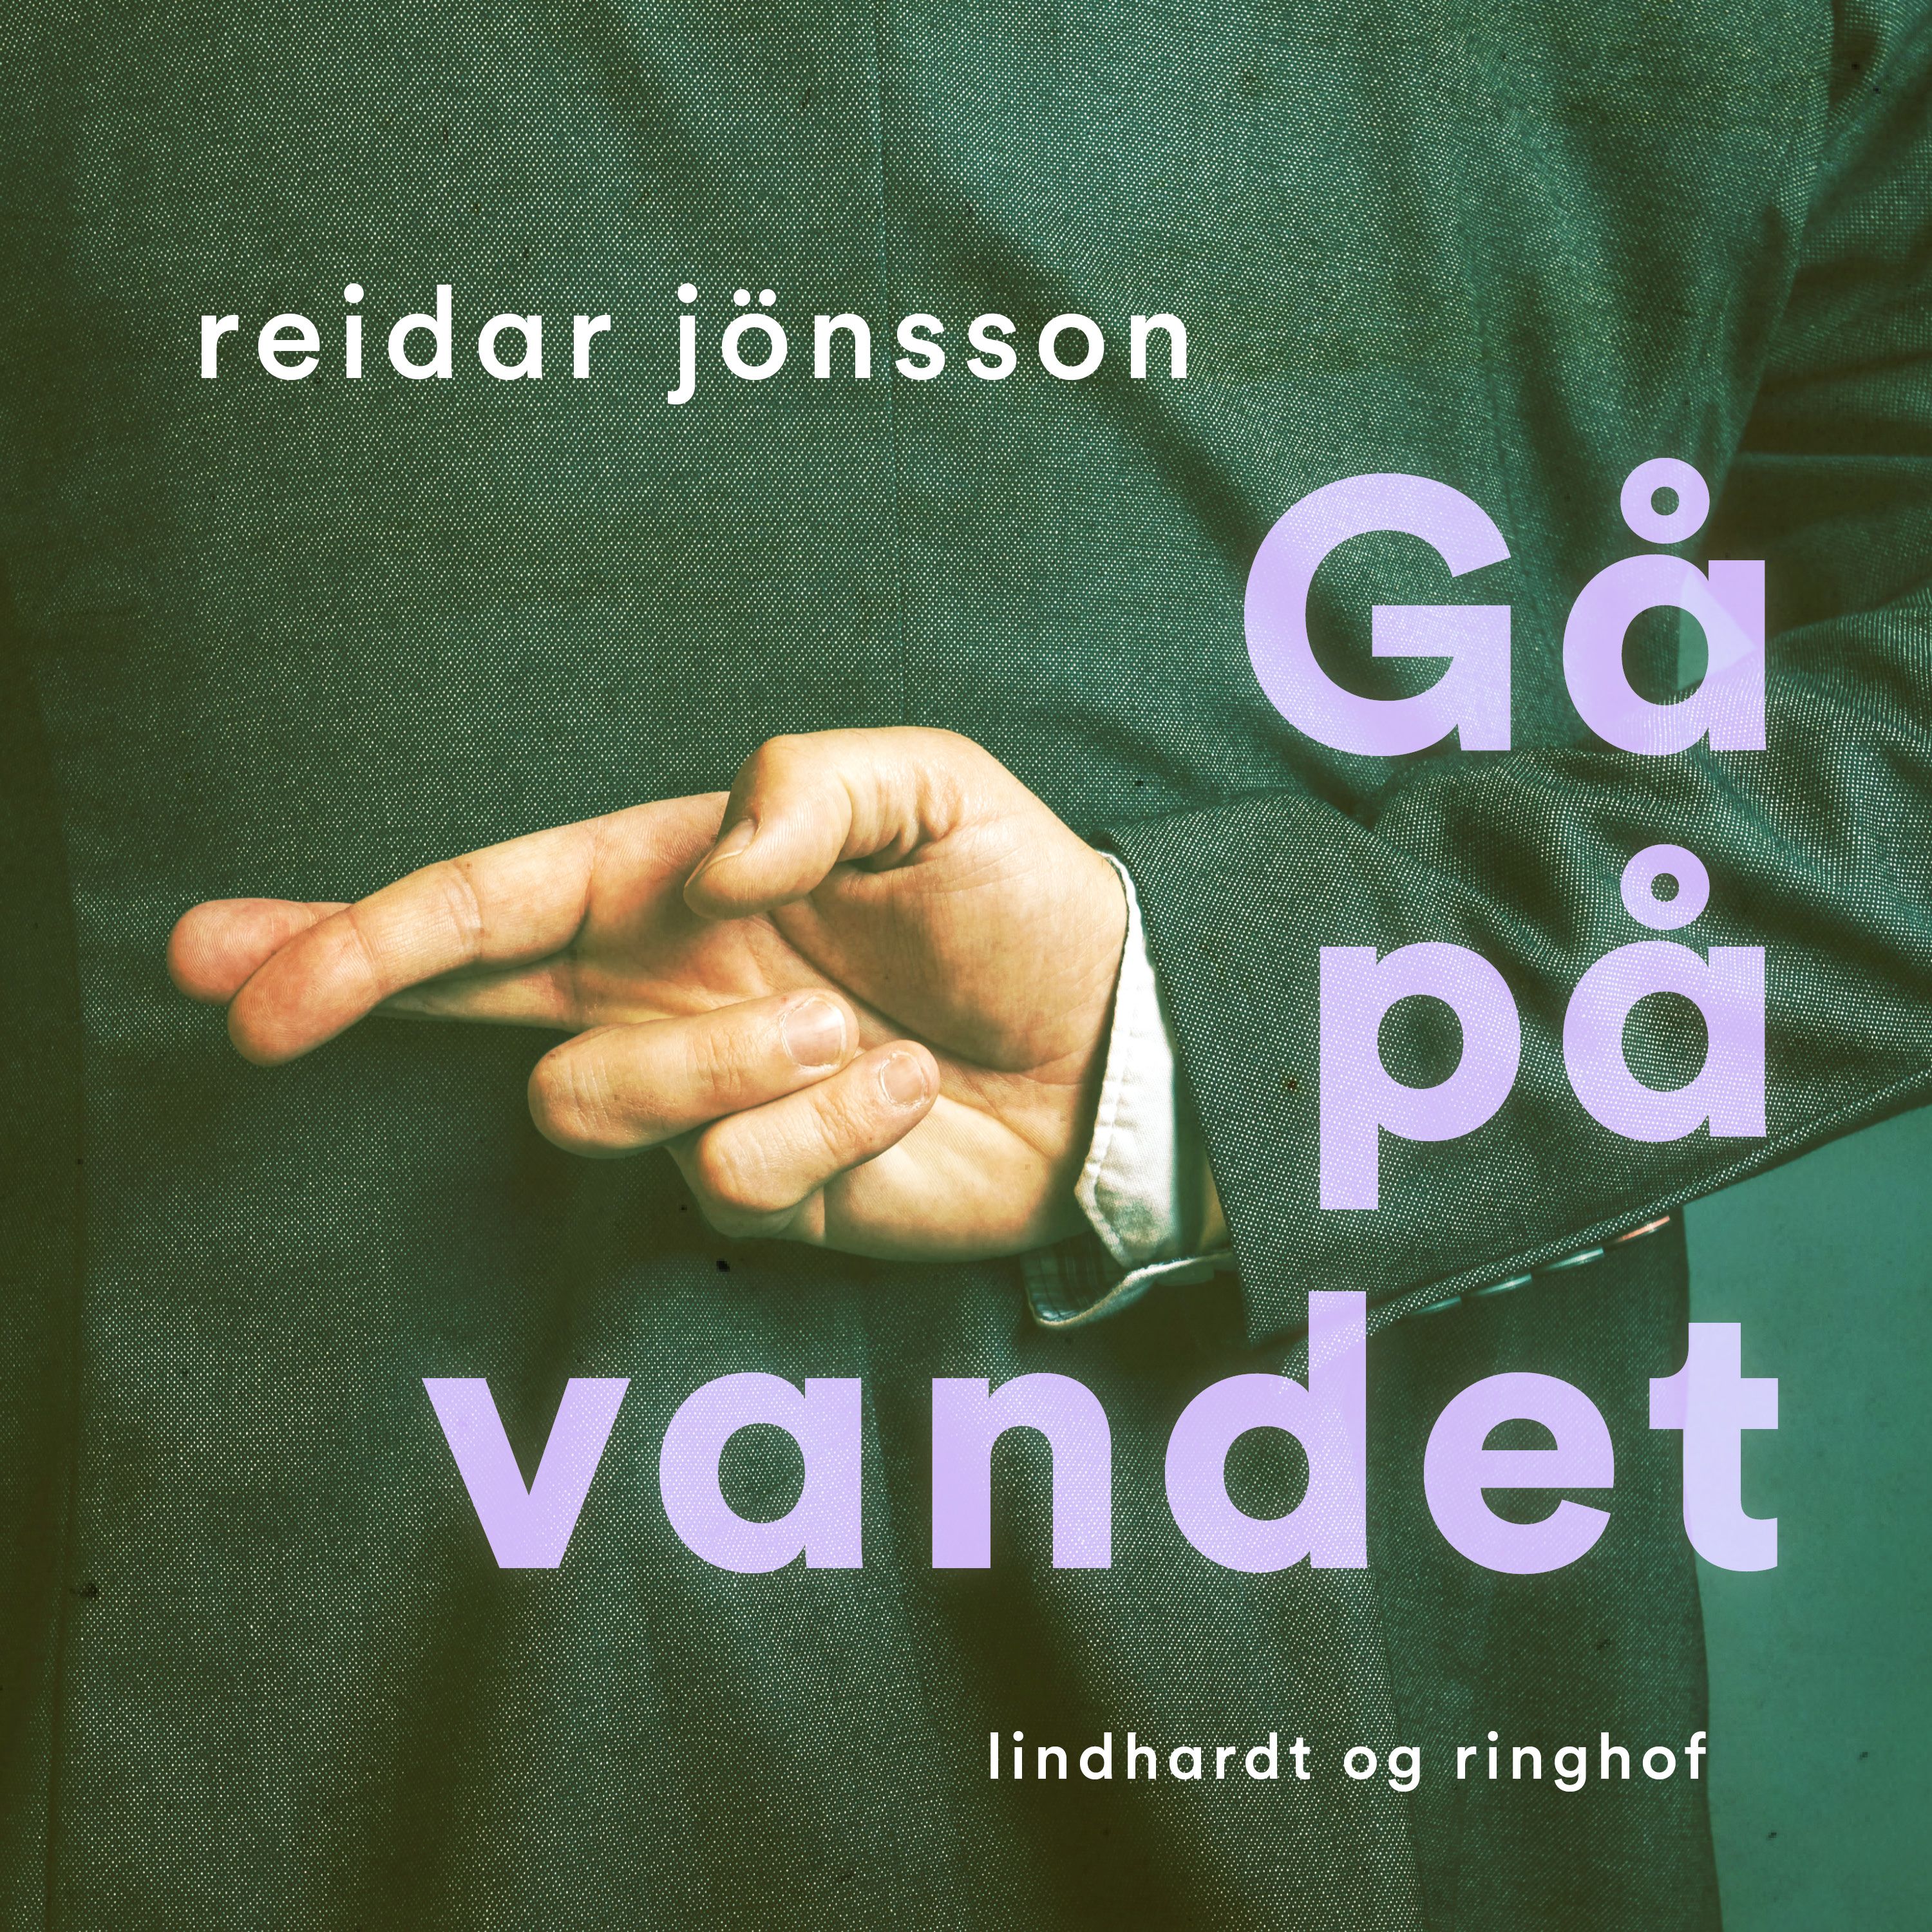 Gå på vandet, audiobook by Reidar Jönsson